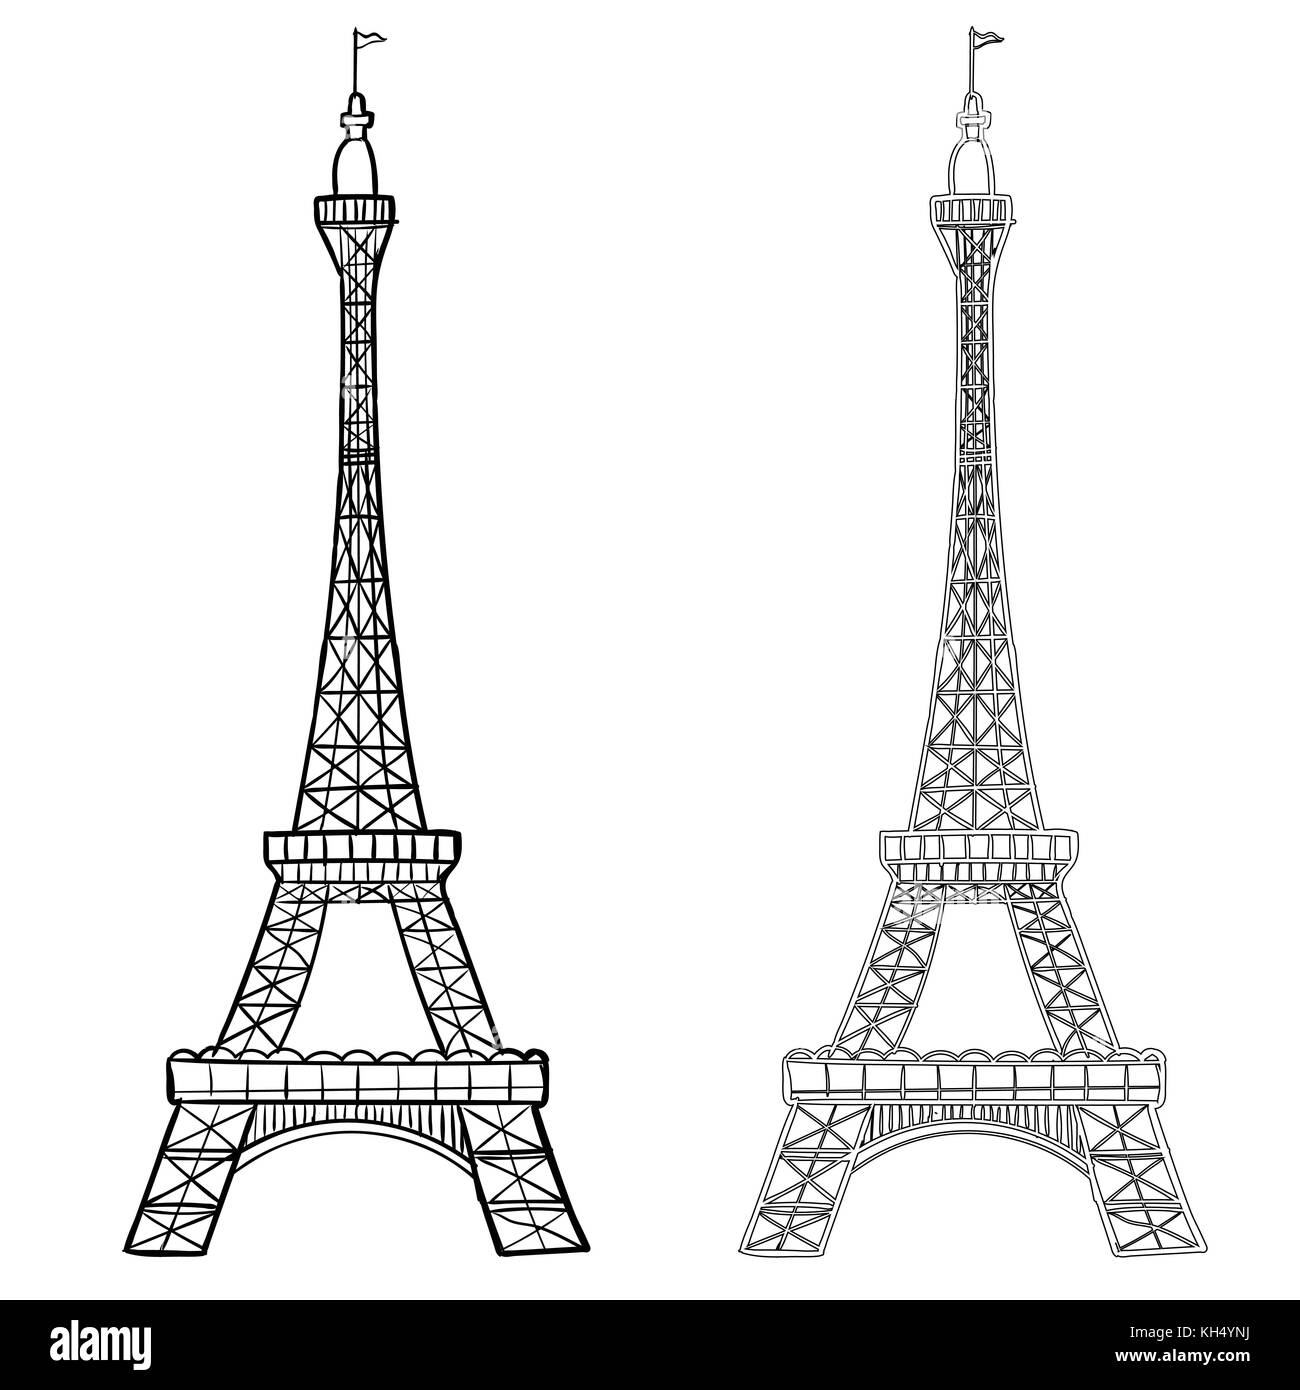 Illustration de la tour eiffel avec deux styles, dessin à la main de la tour Eifel. simple croquis style. contour noir isolé sur fond blanc. vecteur han Illustration de Vecteur